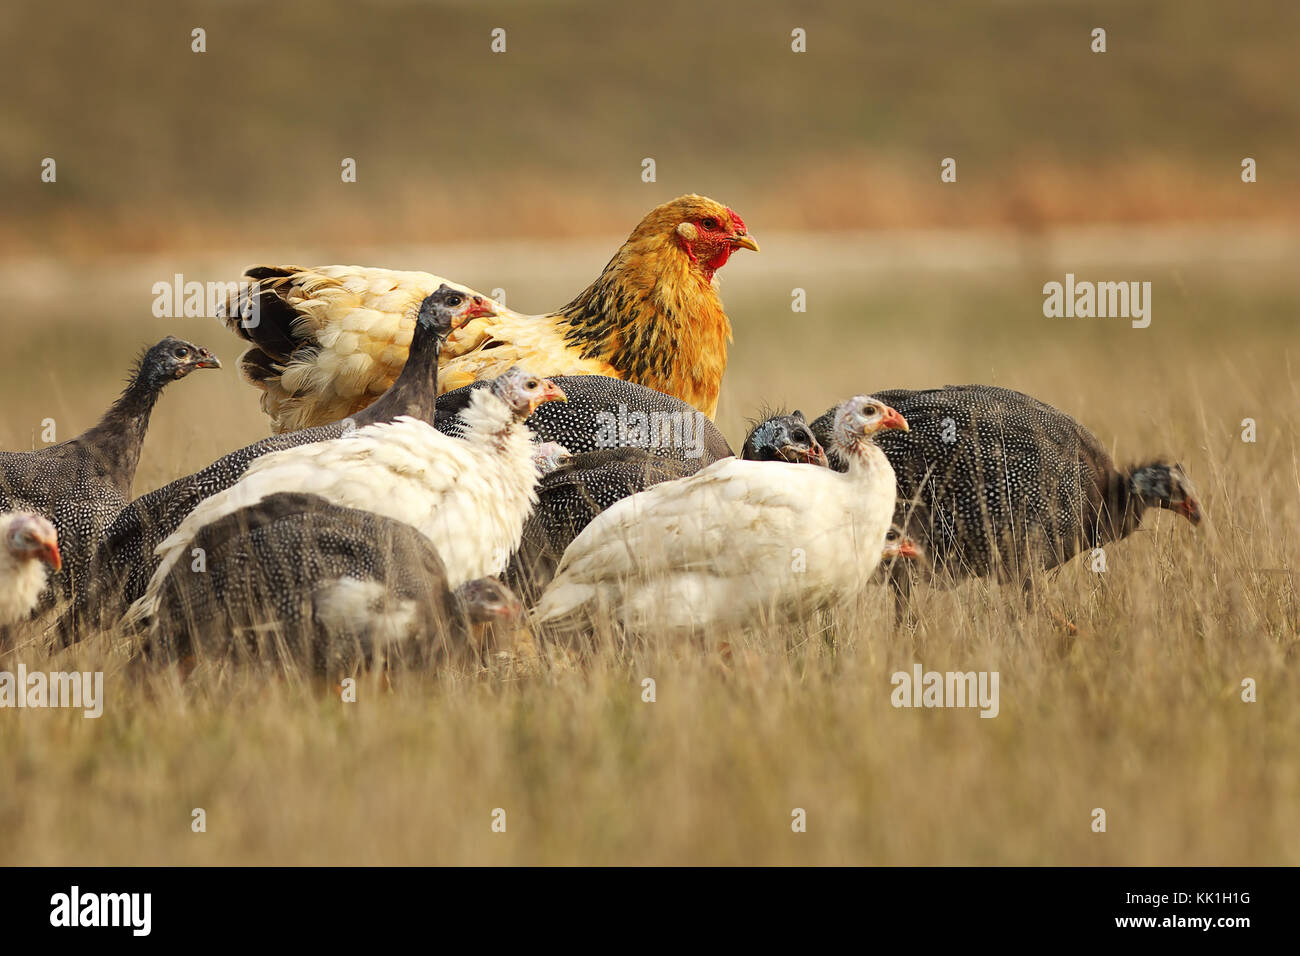 Grande poule brun debout avec troupeau de pintades, en quête de nourriture près de la ferme Banque D'Images